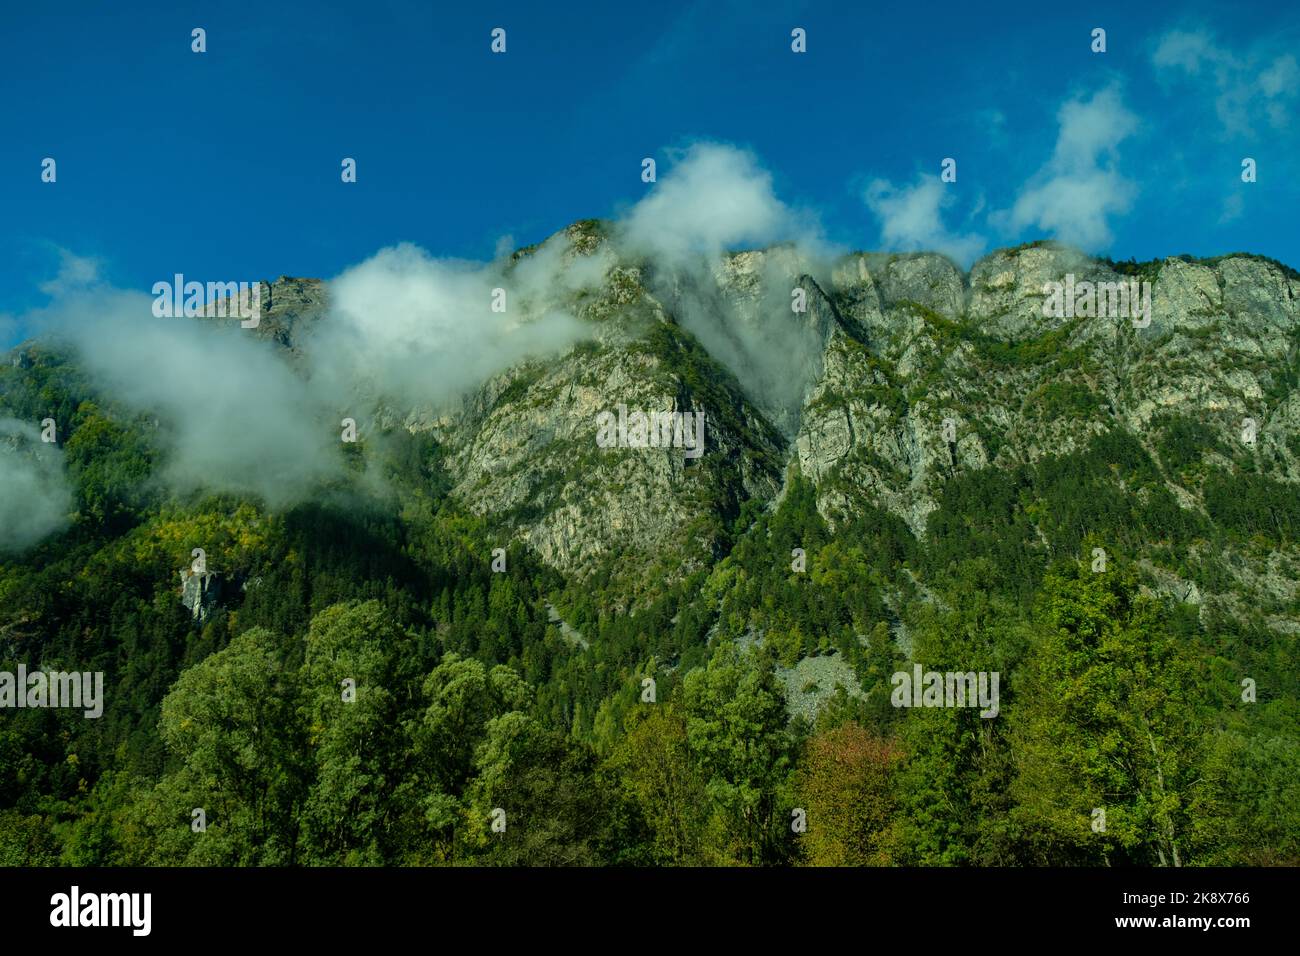 Il picco delle Alpi è previsto all'inizio di ottobre. neve in cima alla montagna. Foto del paesaggio montano. Regione alpina Foto Stock